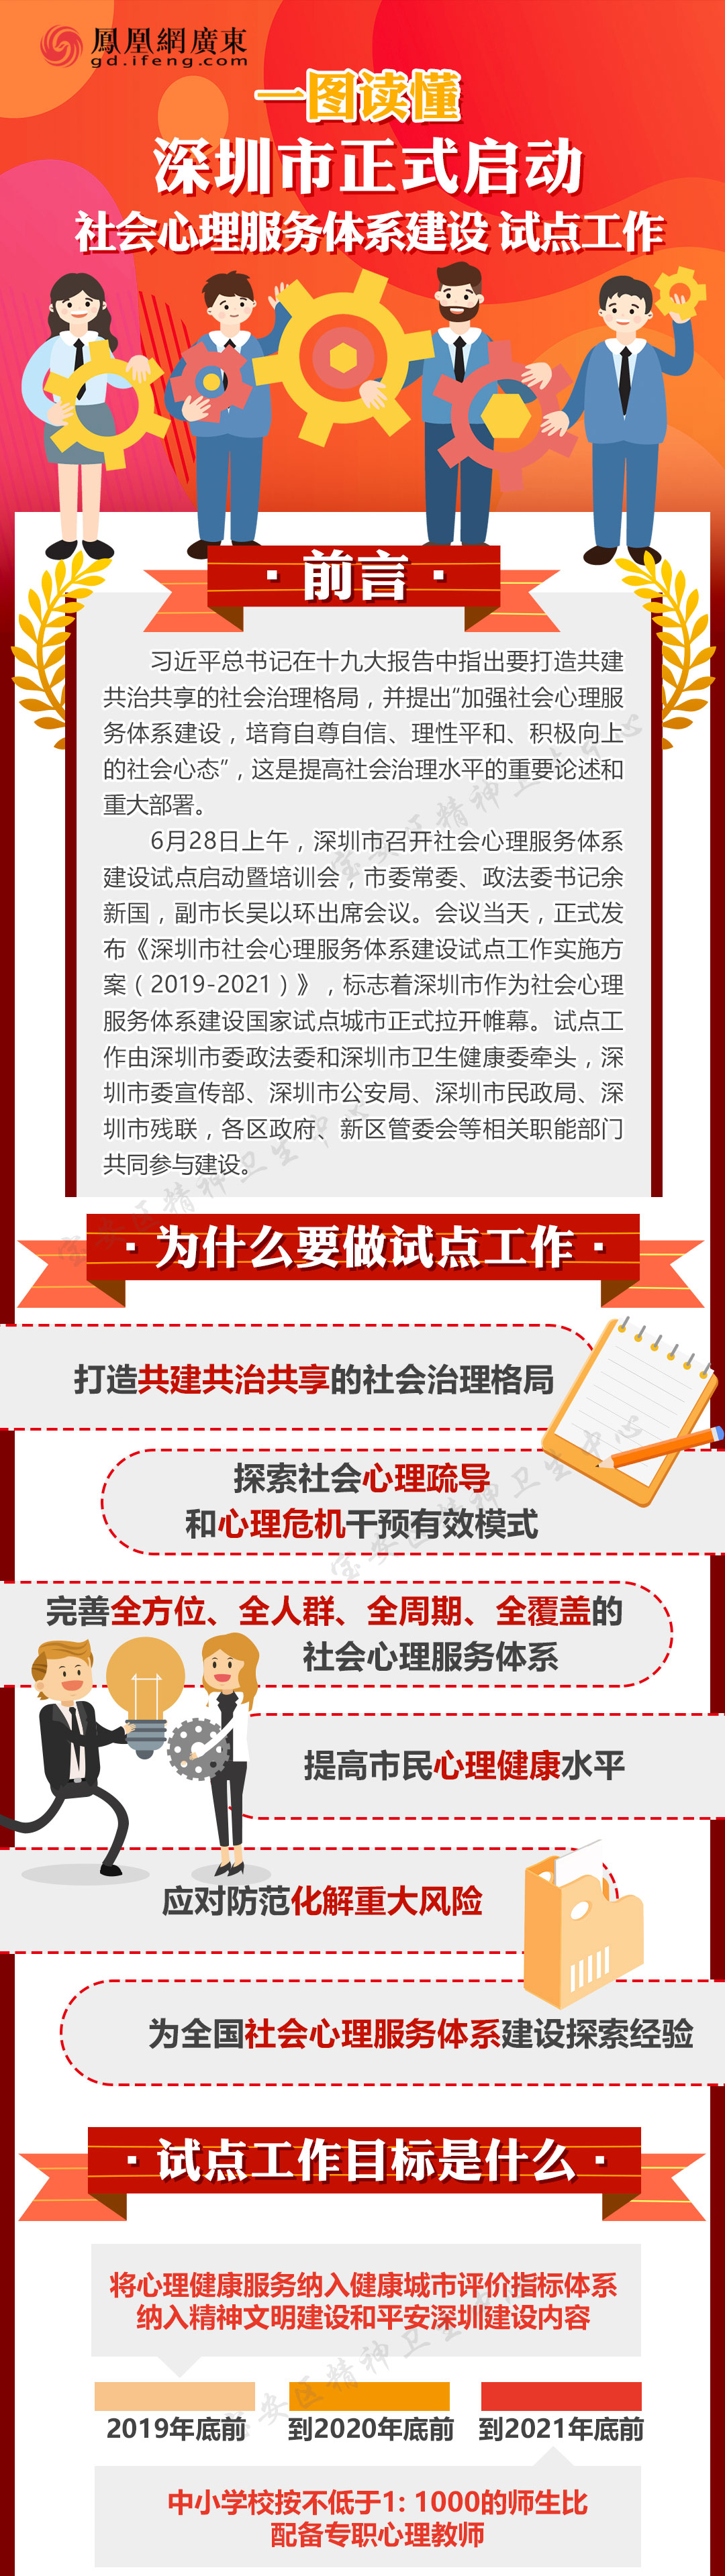 一图读懂 深圳市正式启动社会心理服务体系建设试点工作